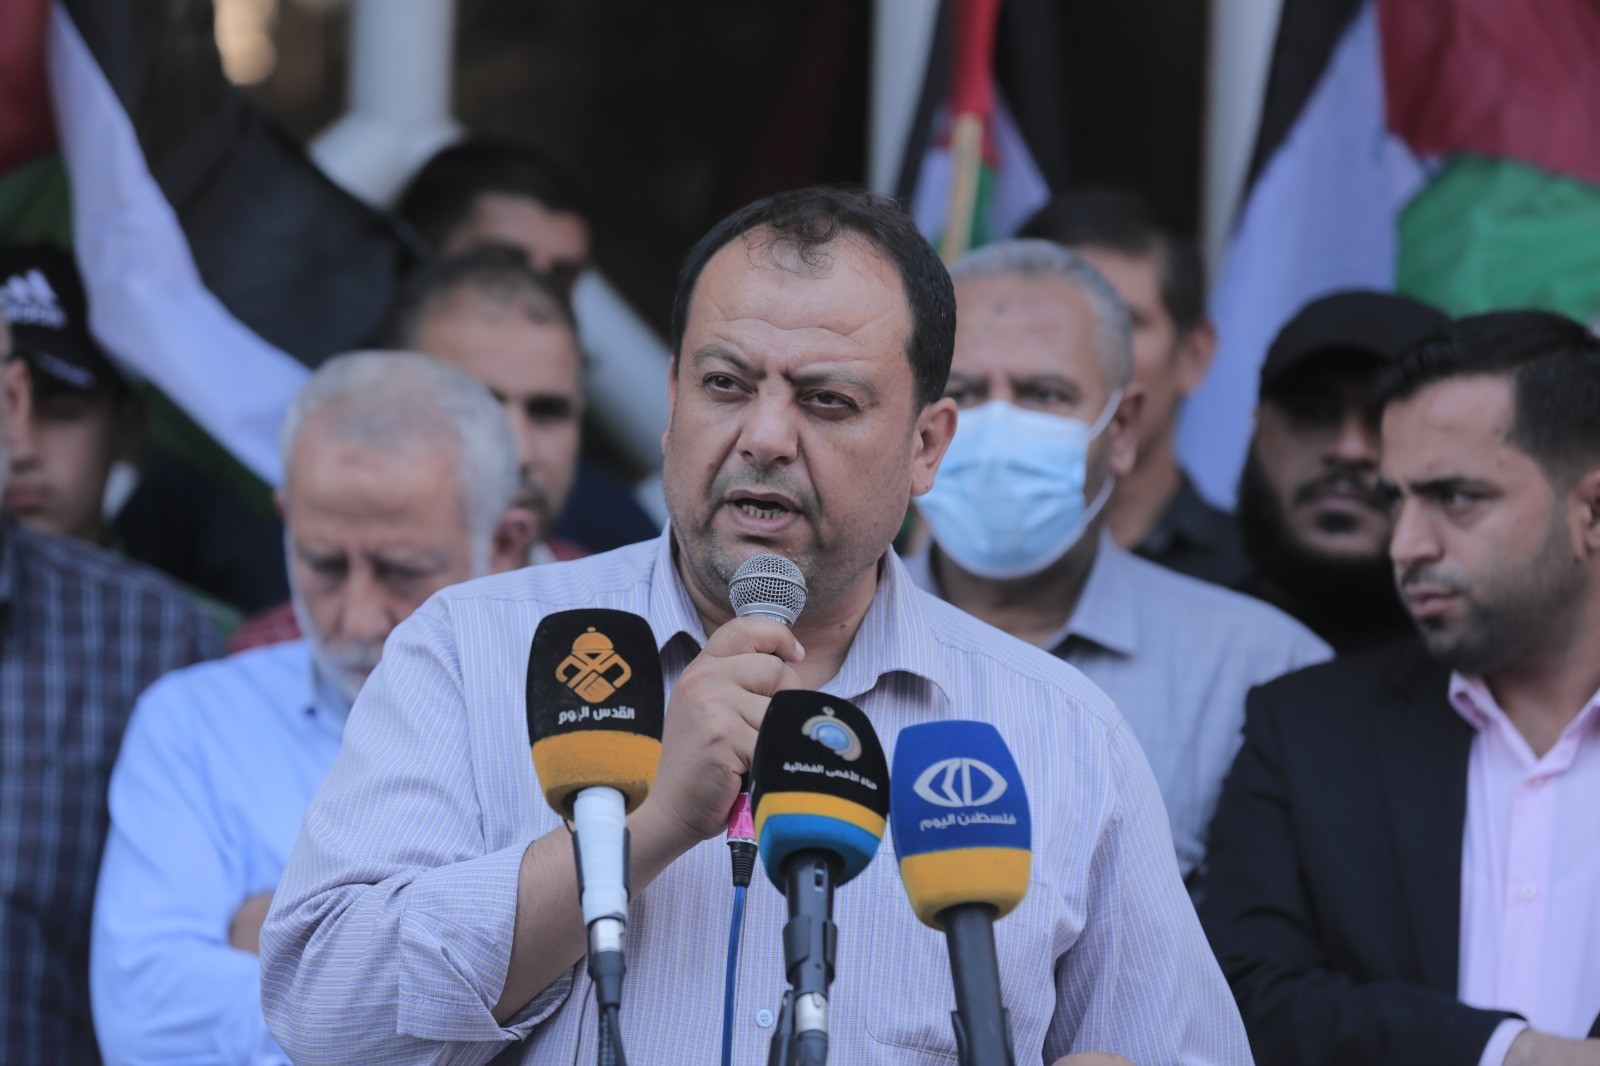 وقفة احتجاجية في غزّة تنديدًا باعتقال الأجهزة الأمنية في الضفة لـ"قادة الرأي"